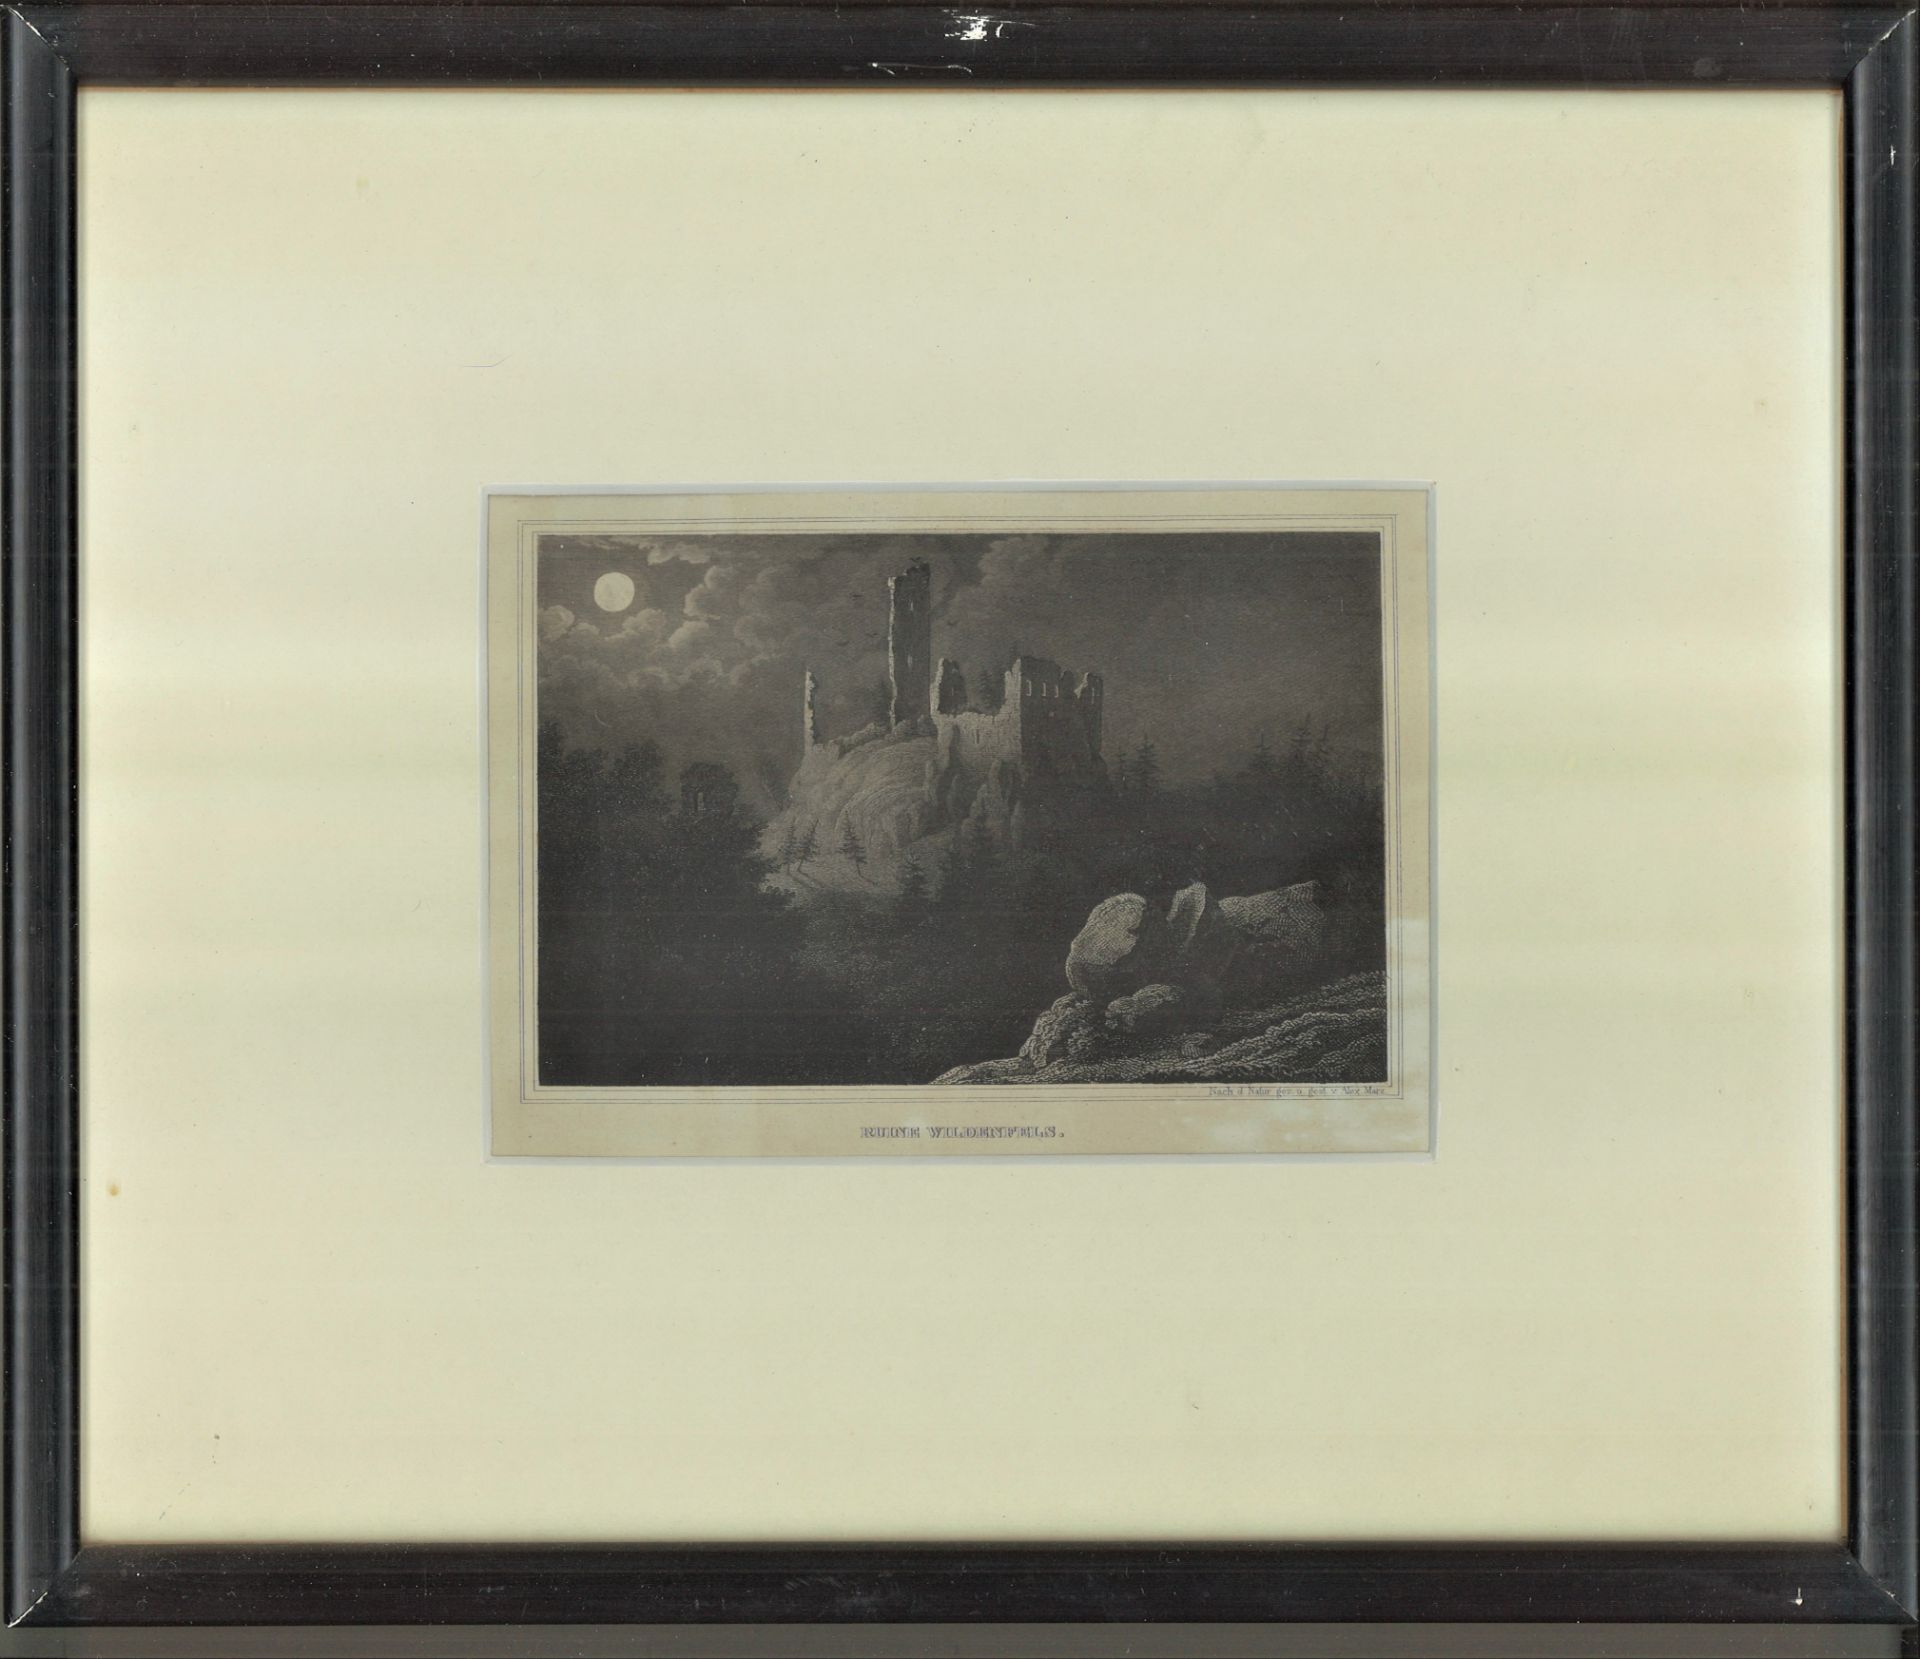 Stahlstich "Ruine Wildenfels", Zeichner: Alex Marx (1815 - ), Blattgröße: ca. B 17 cm x 12,5 cm,